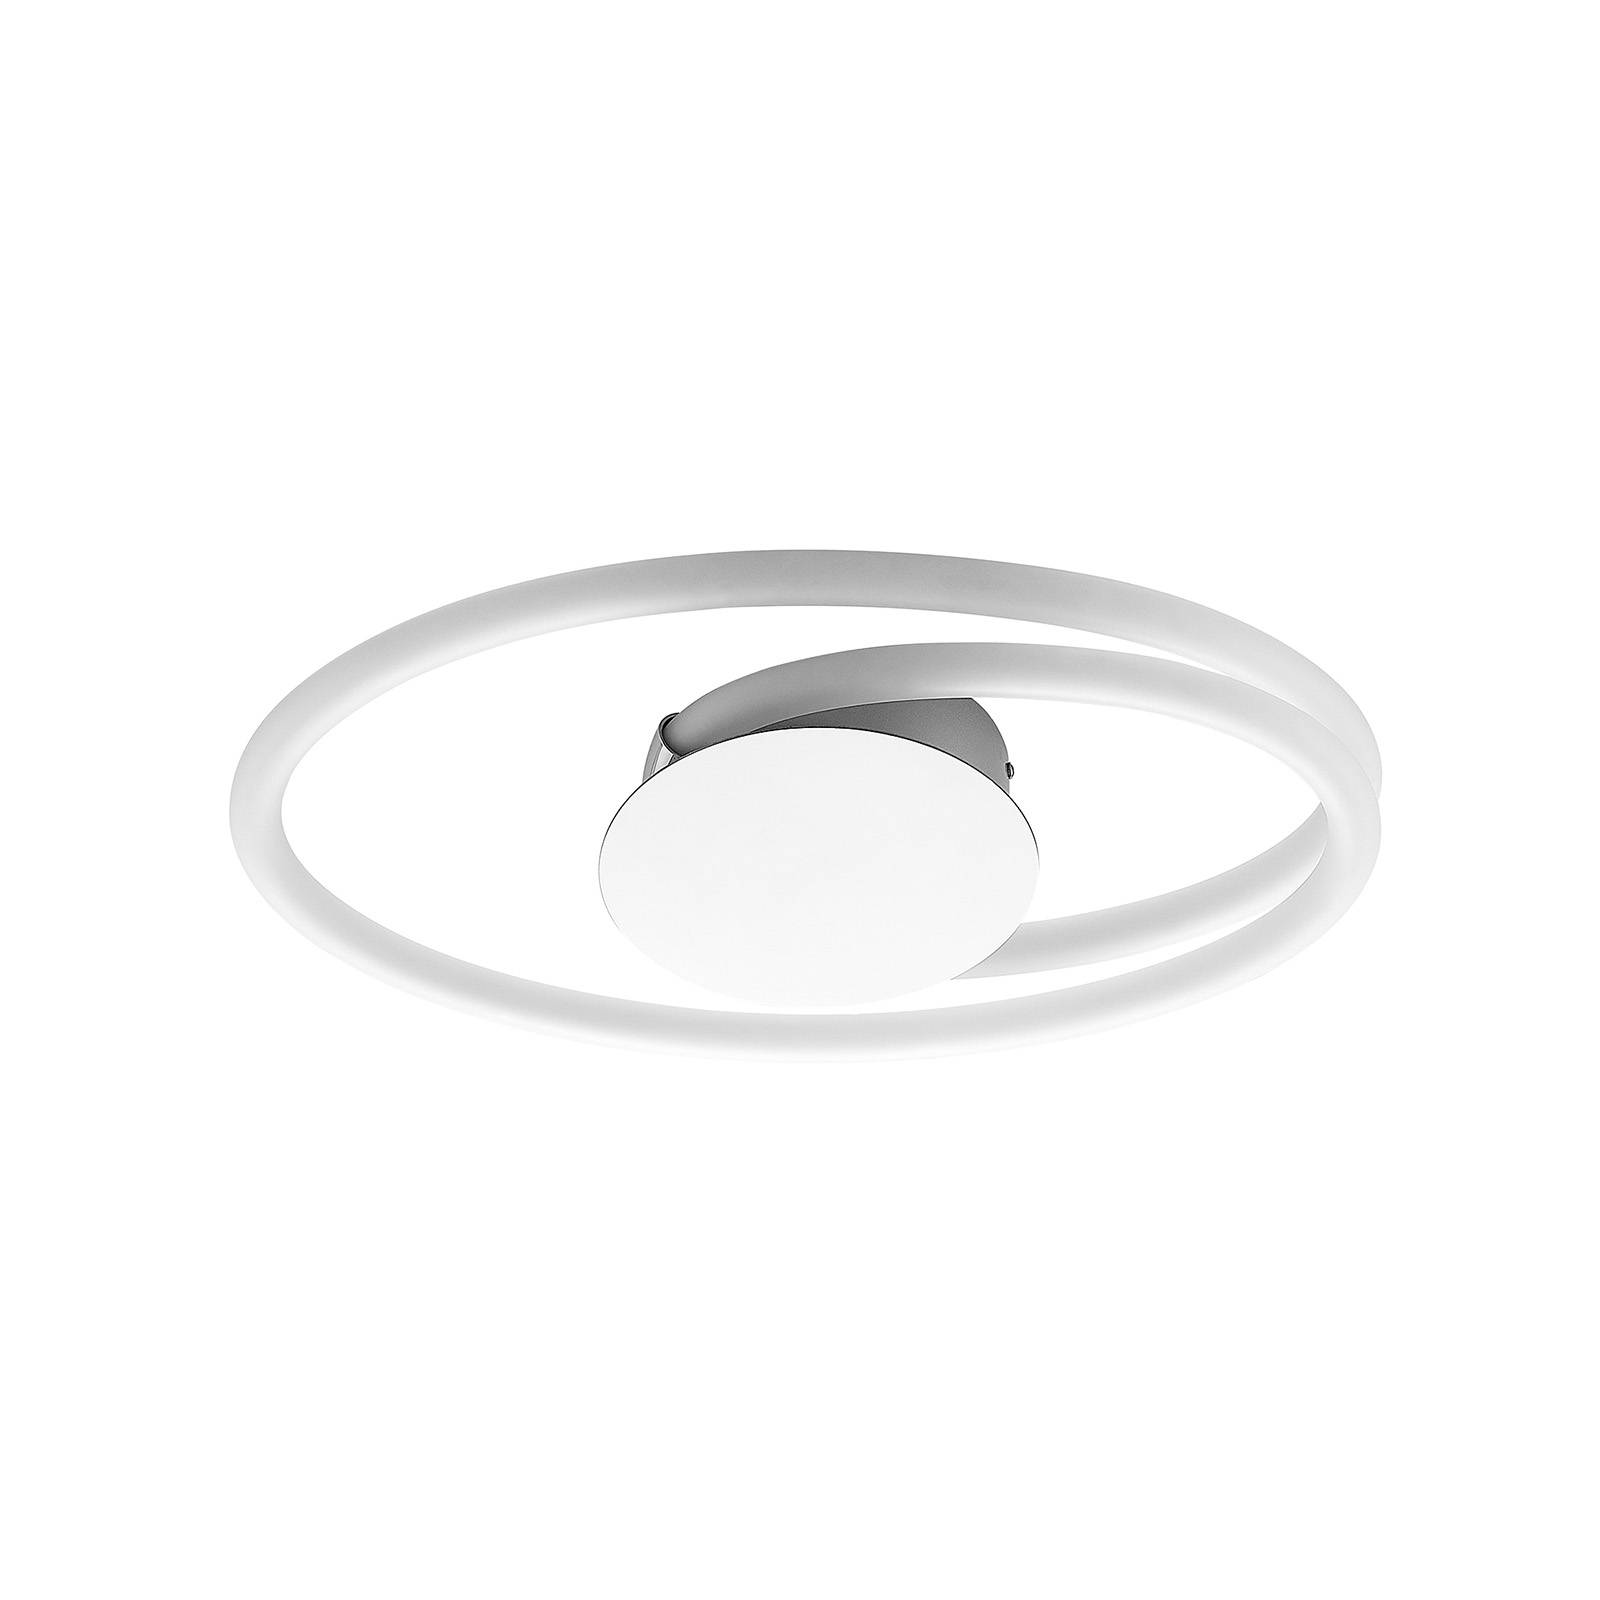 Lucande Ovala LED-Deckenleuchte, 53 cm